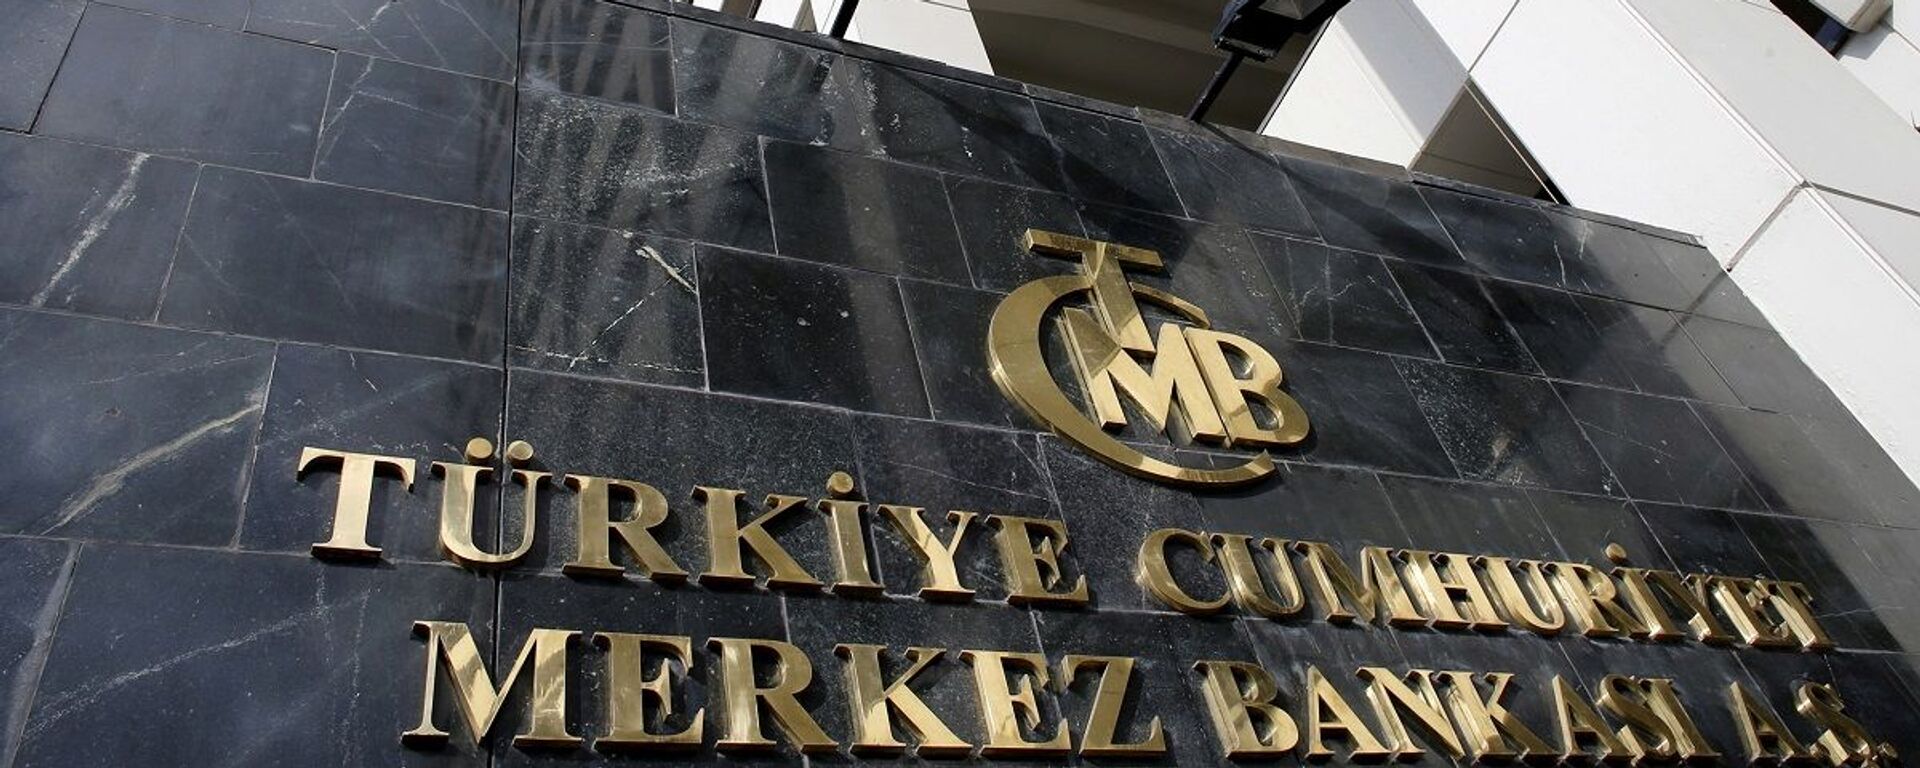 Merkez Bankası - Sputnik Türkiye, 1920, 29.12.2021